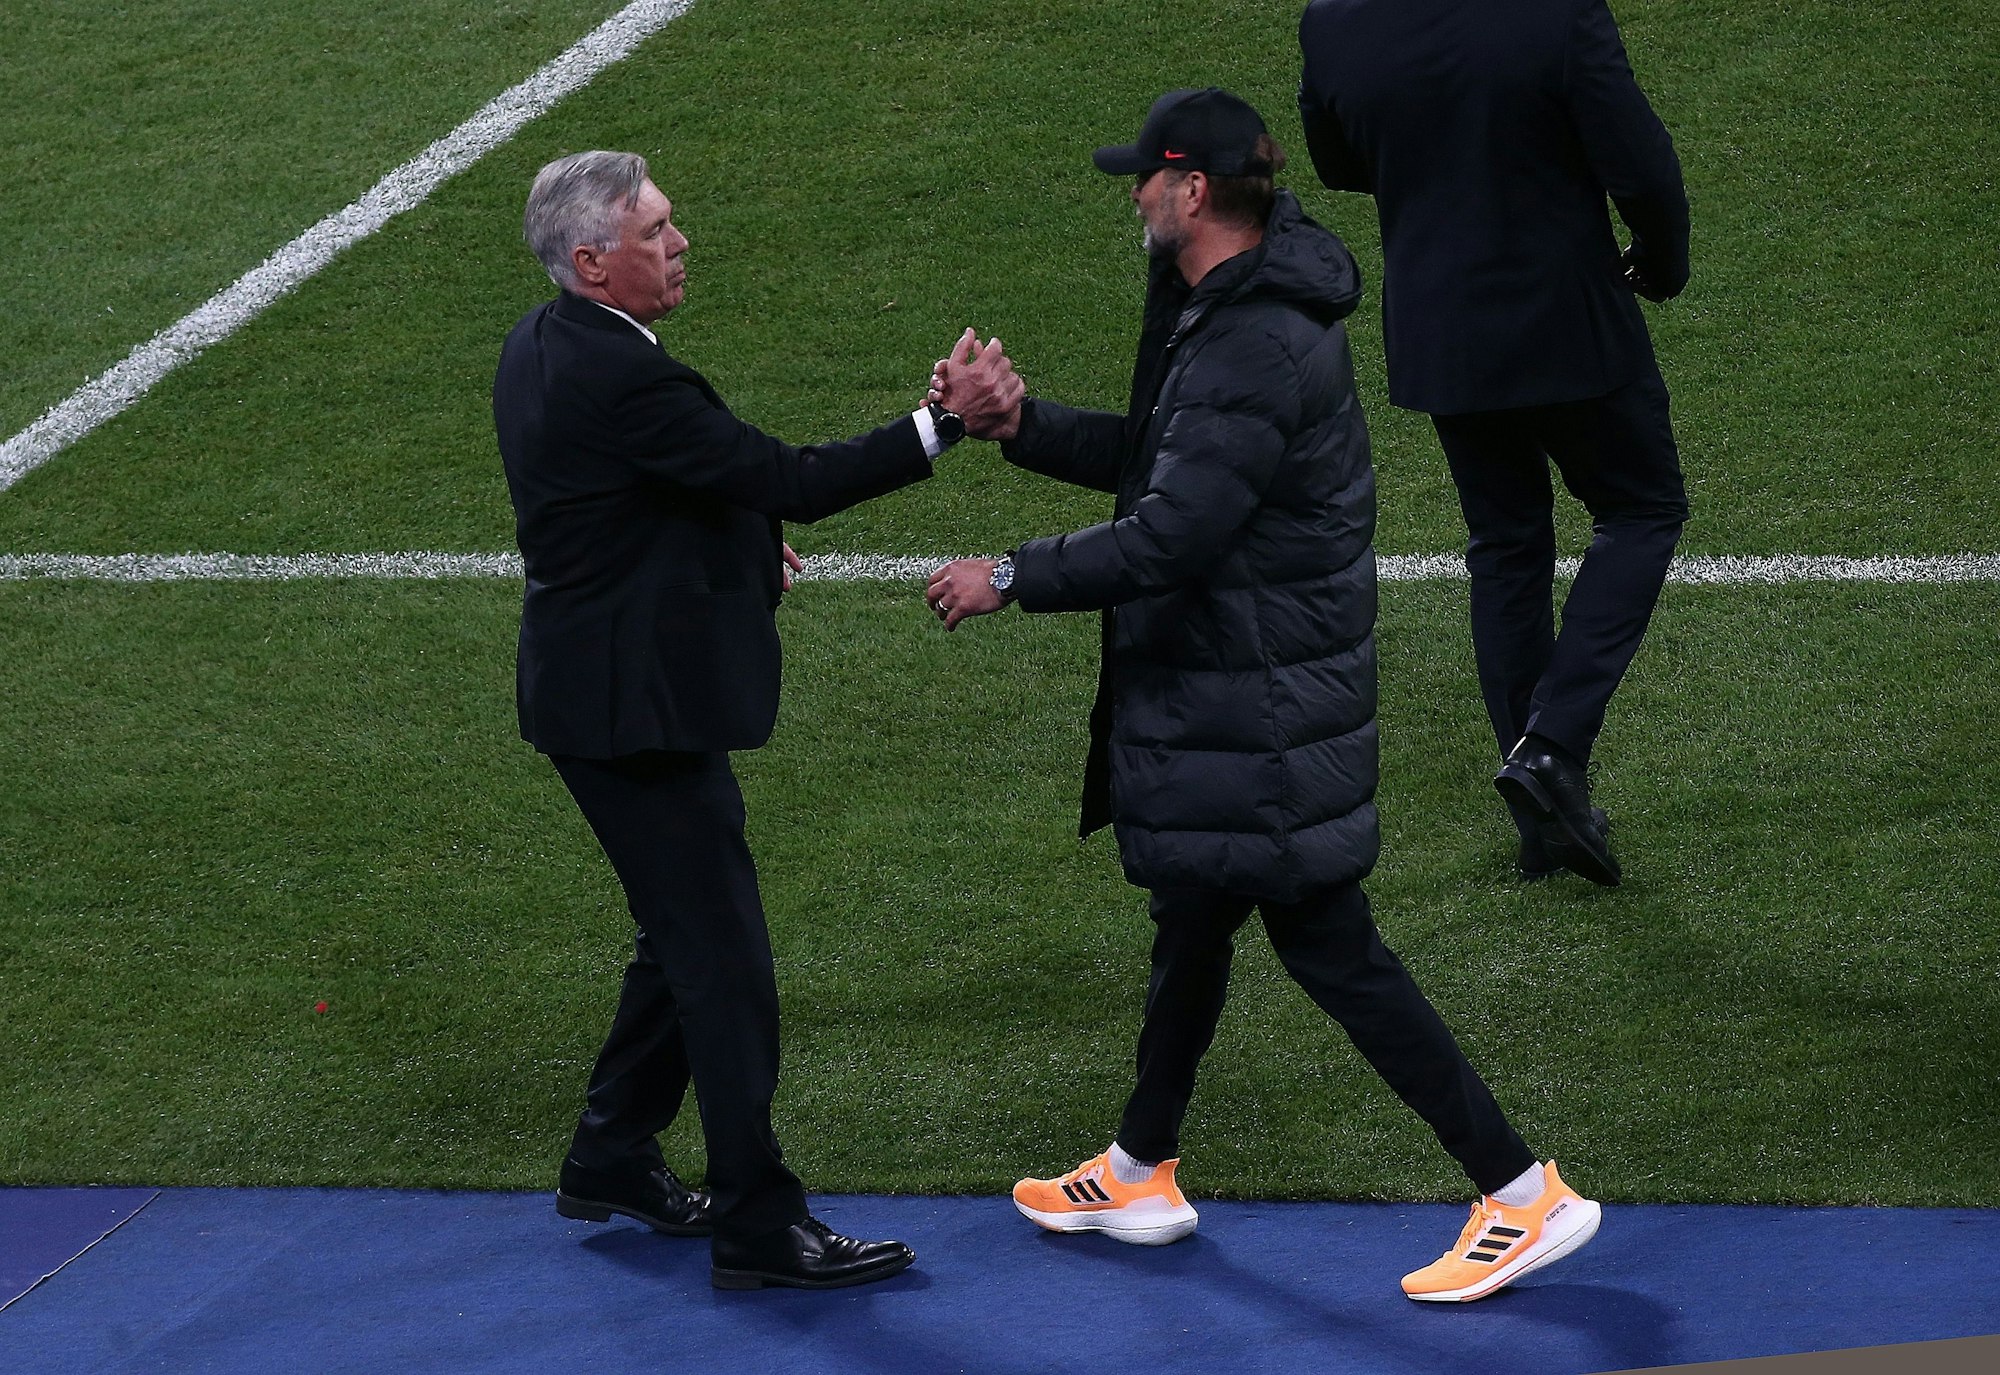 Jürgen Klopp, Trainer von Liverpool, gibt Carlo Ancelotti, Trainer von Real Madrid, nach dem Spiel die Hand.